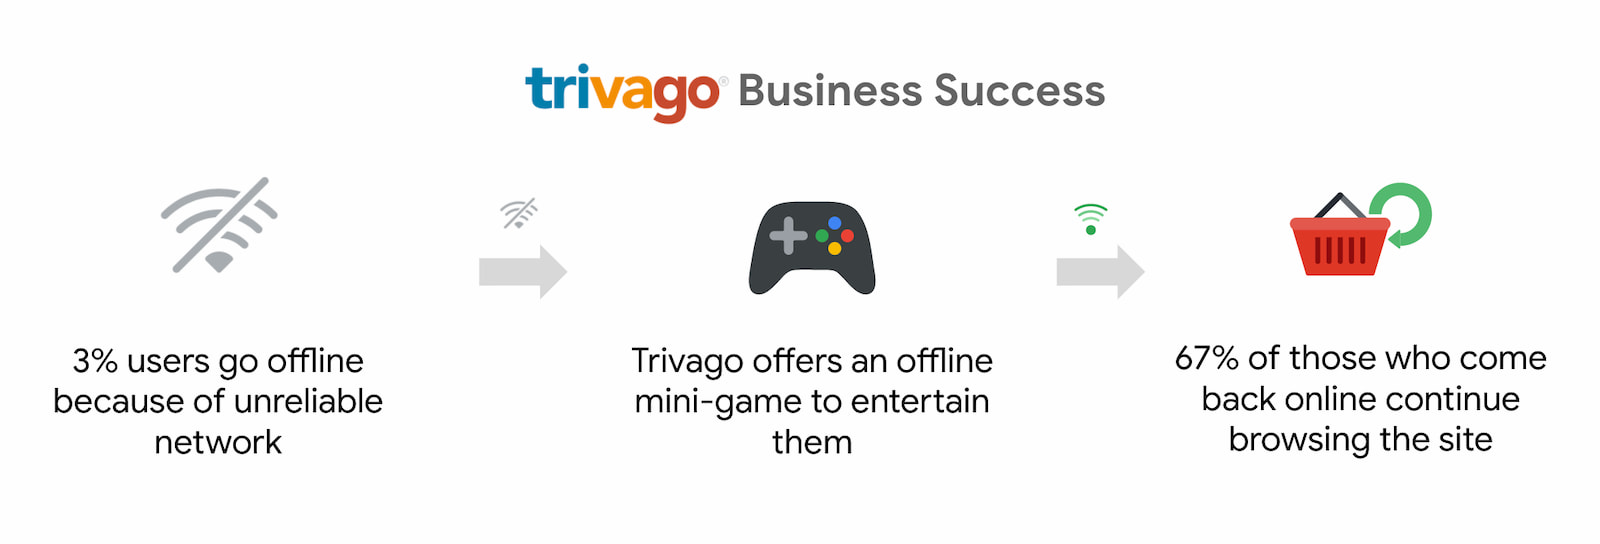 Firma Trivago odnotowała 67-procentowy wzrost liczby użytkowników, którzy wrócili do internetu i kontynuowali przeglądanie internetu.